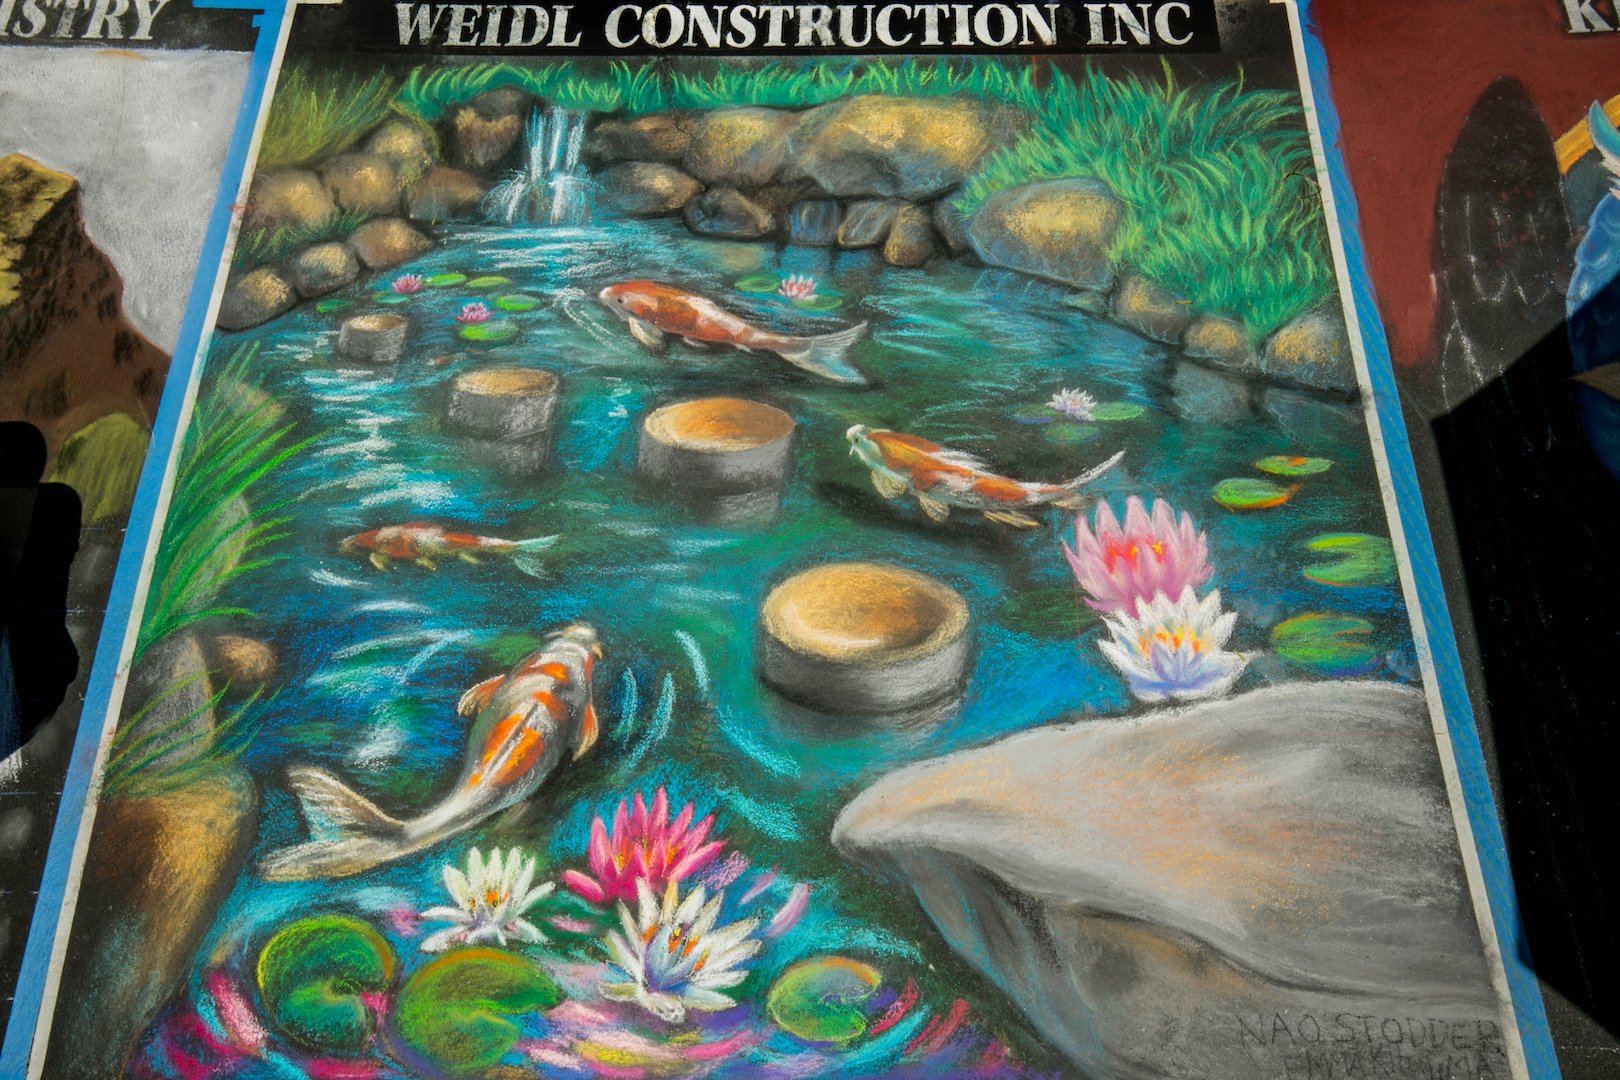  Weidl Construction, Inc.  Artist:  Naoko Stodder 